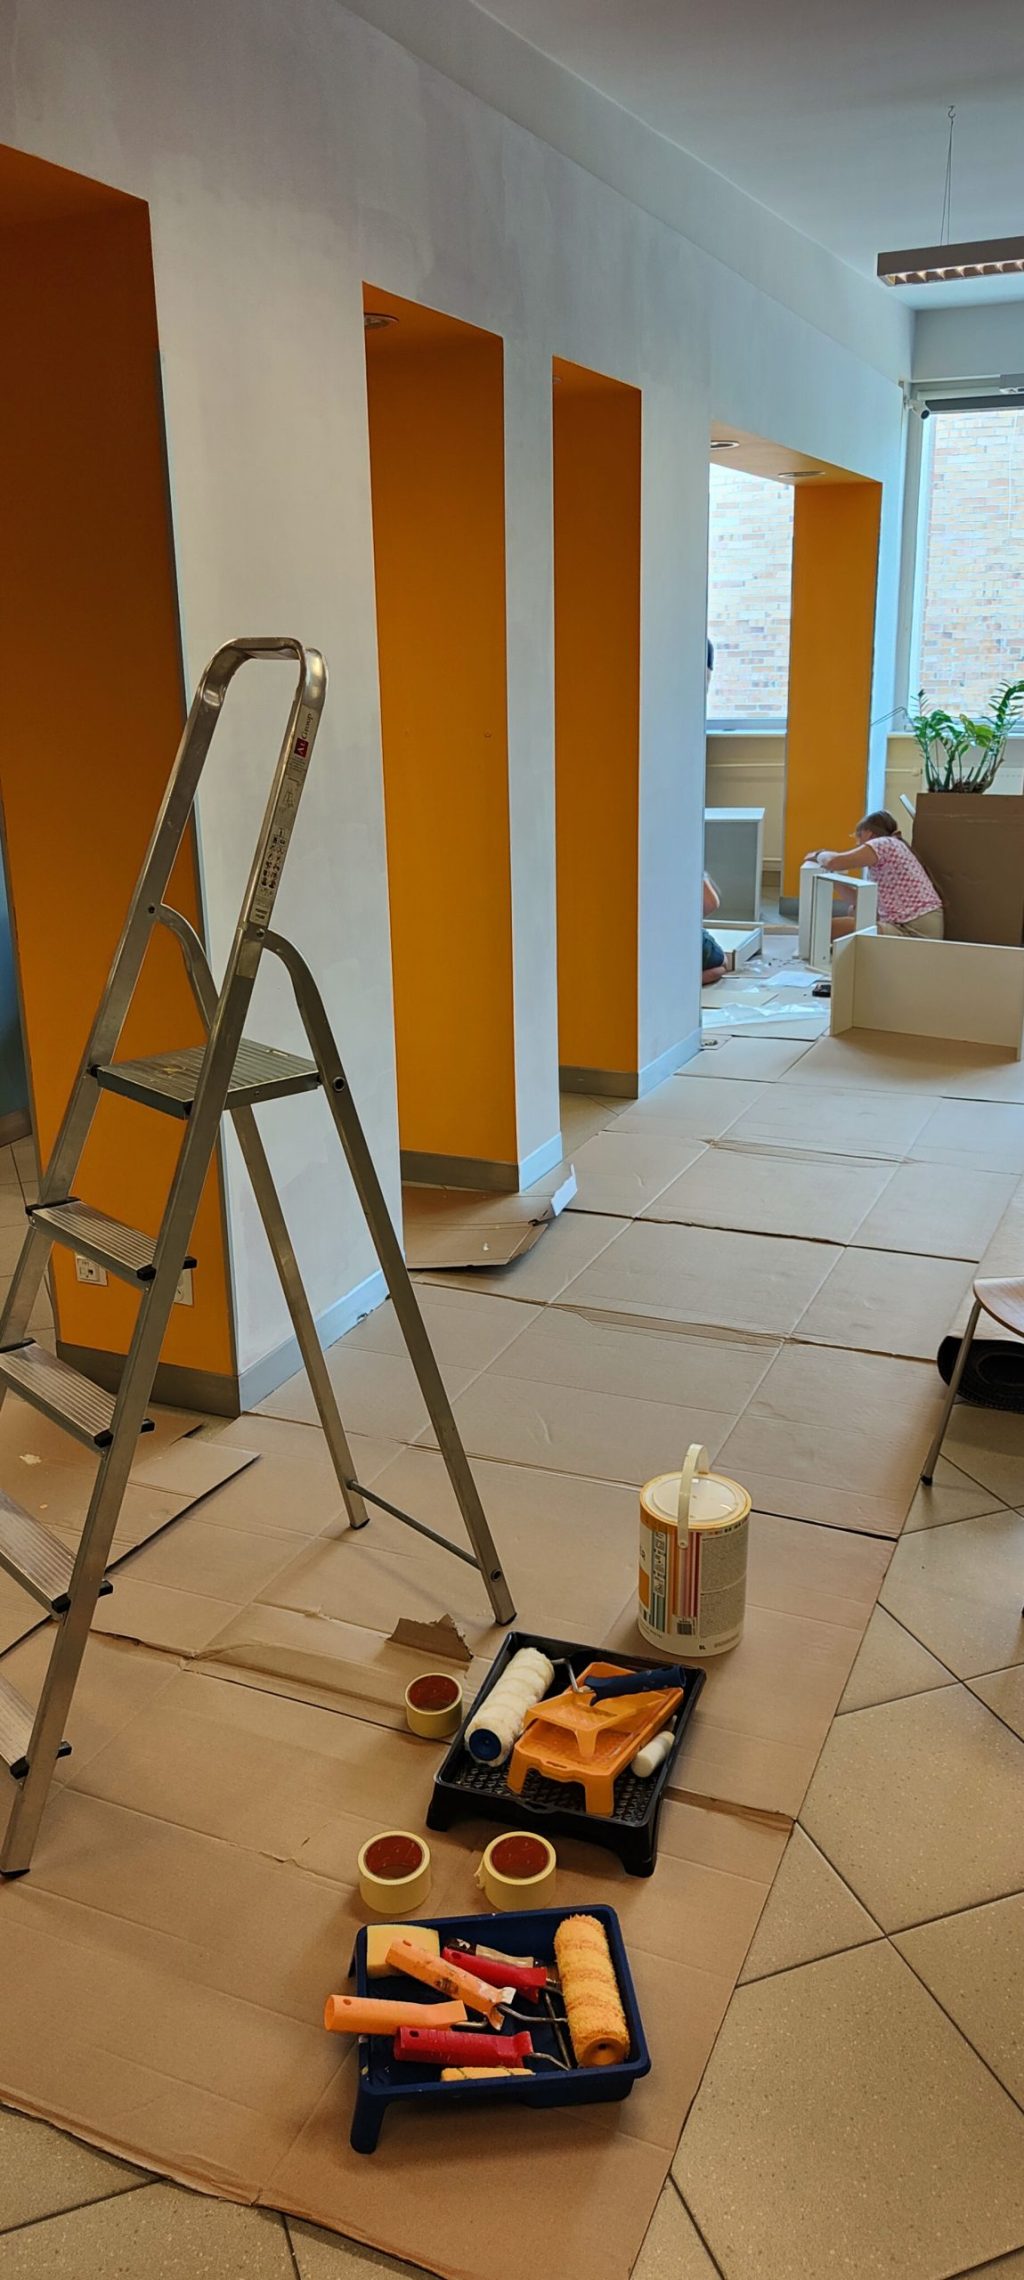 Widok na remontowane pomieszczenie - po prawej stronie łuk ścienny pomalowany na pomarańczowo i biało, w tle kucająca dziewczyna. Na pierwszym planie drabina i farba. Na podłodze karton.